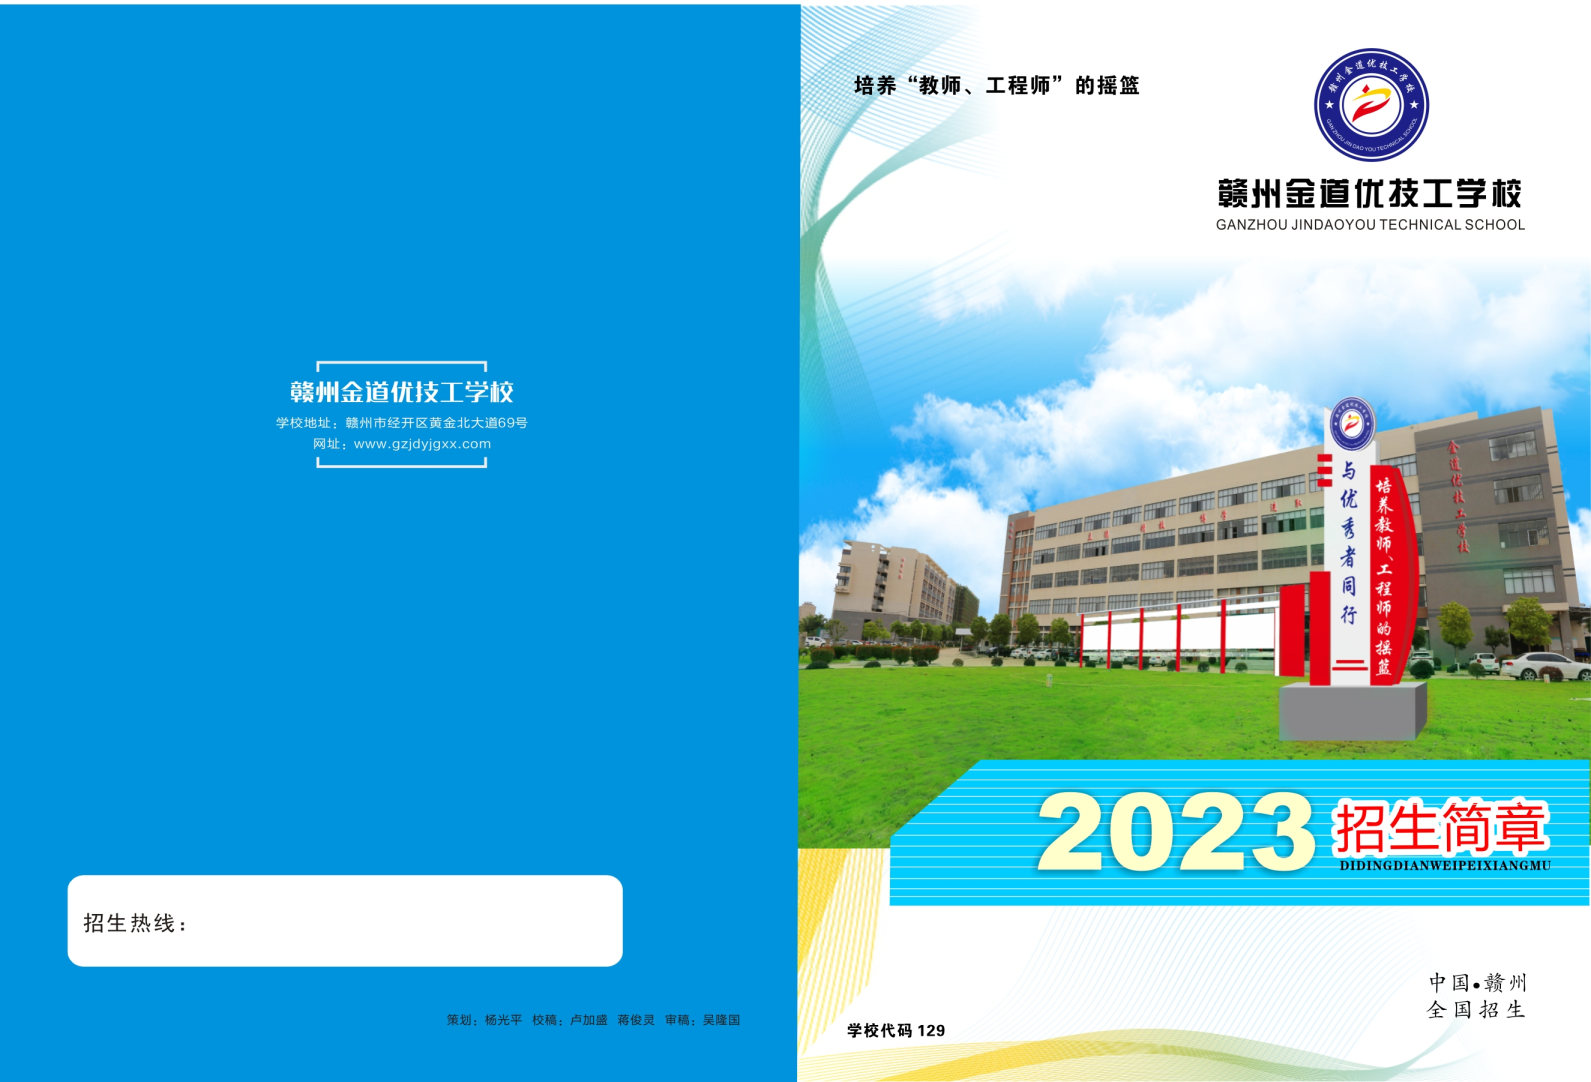 2023赣州金道优技工学校_Page1_Image1.jpg